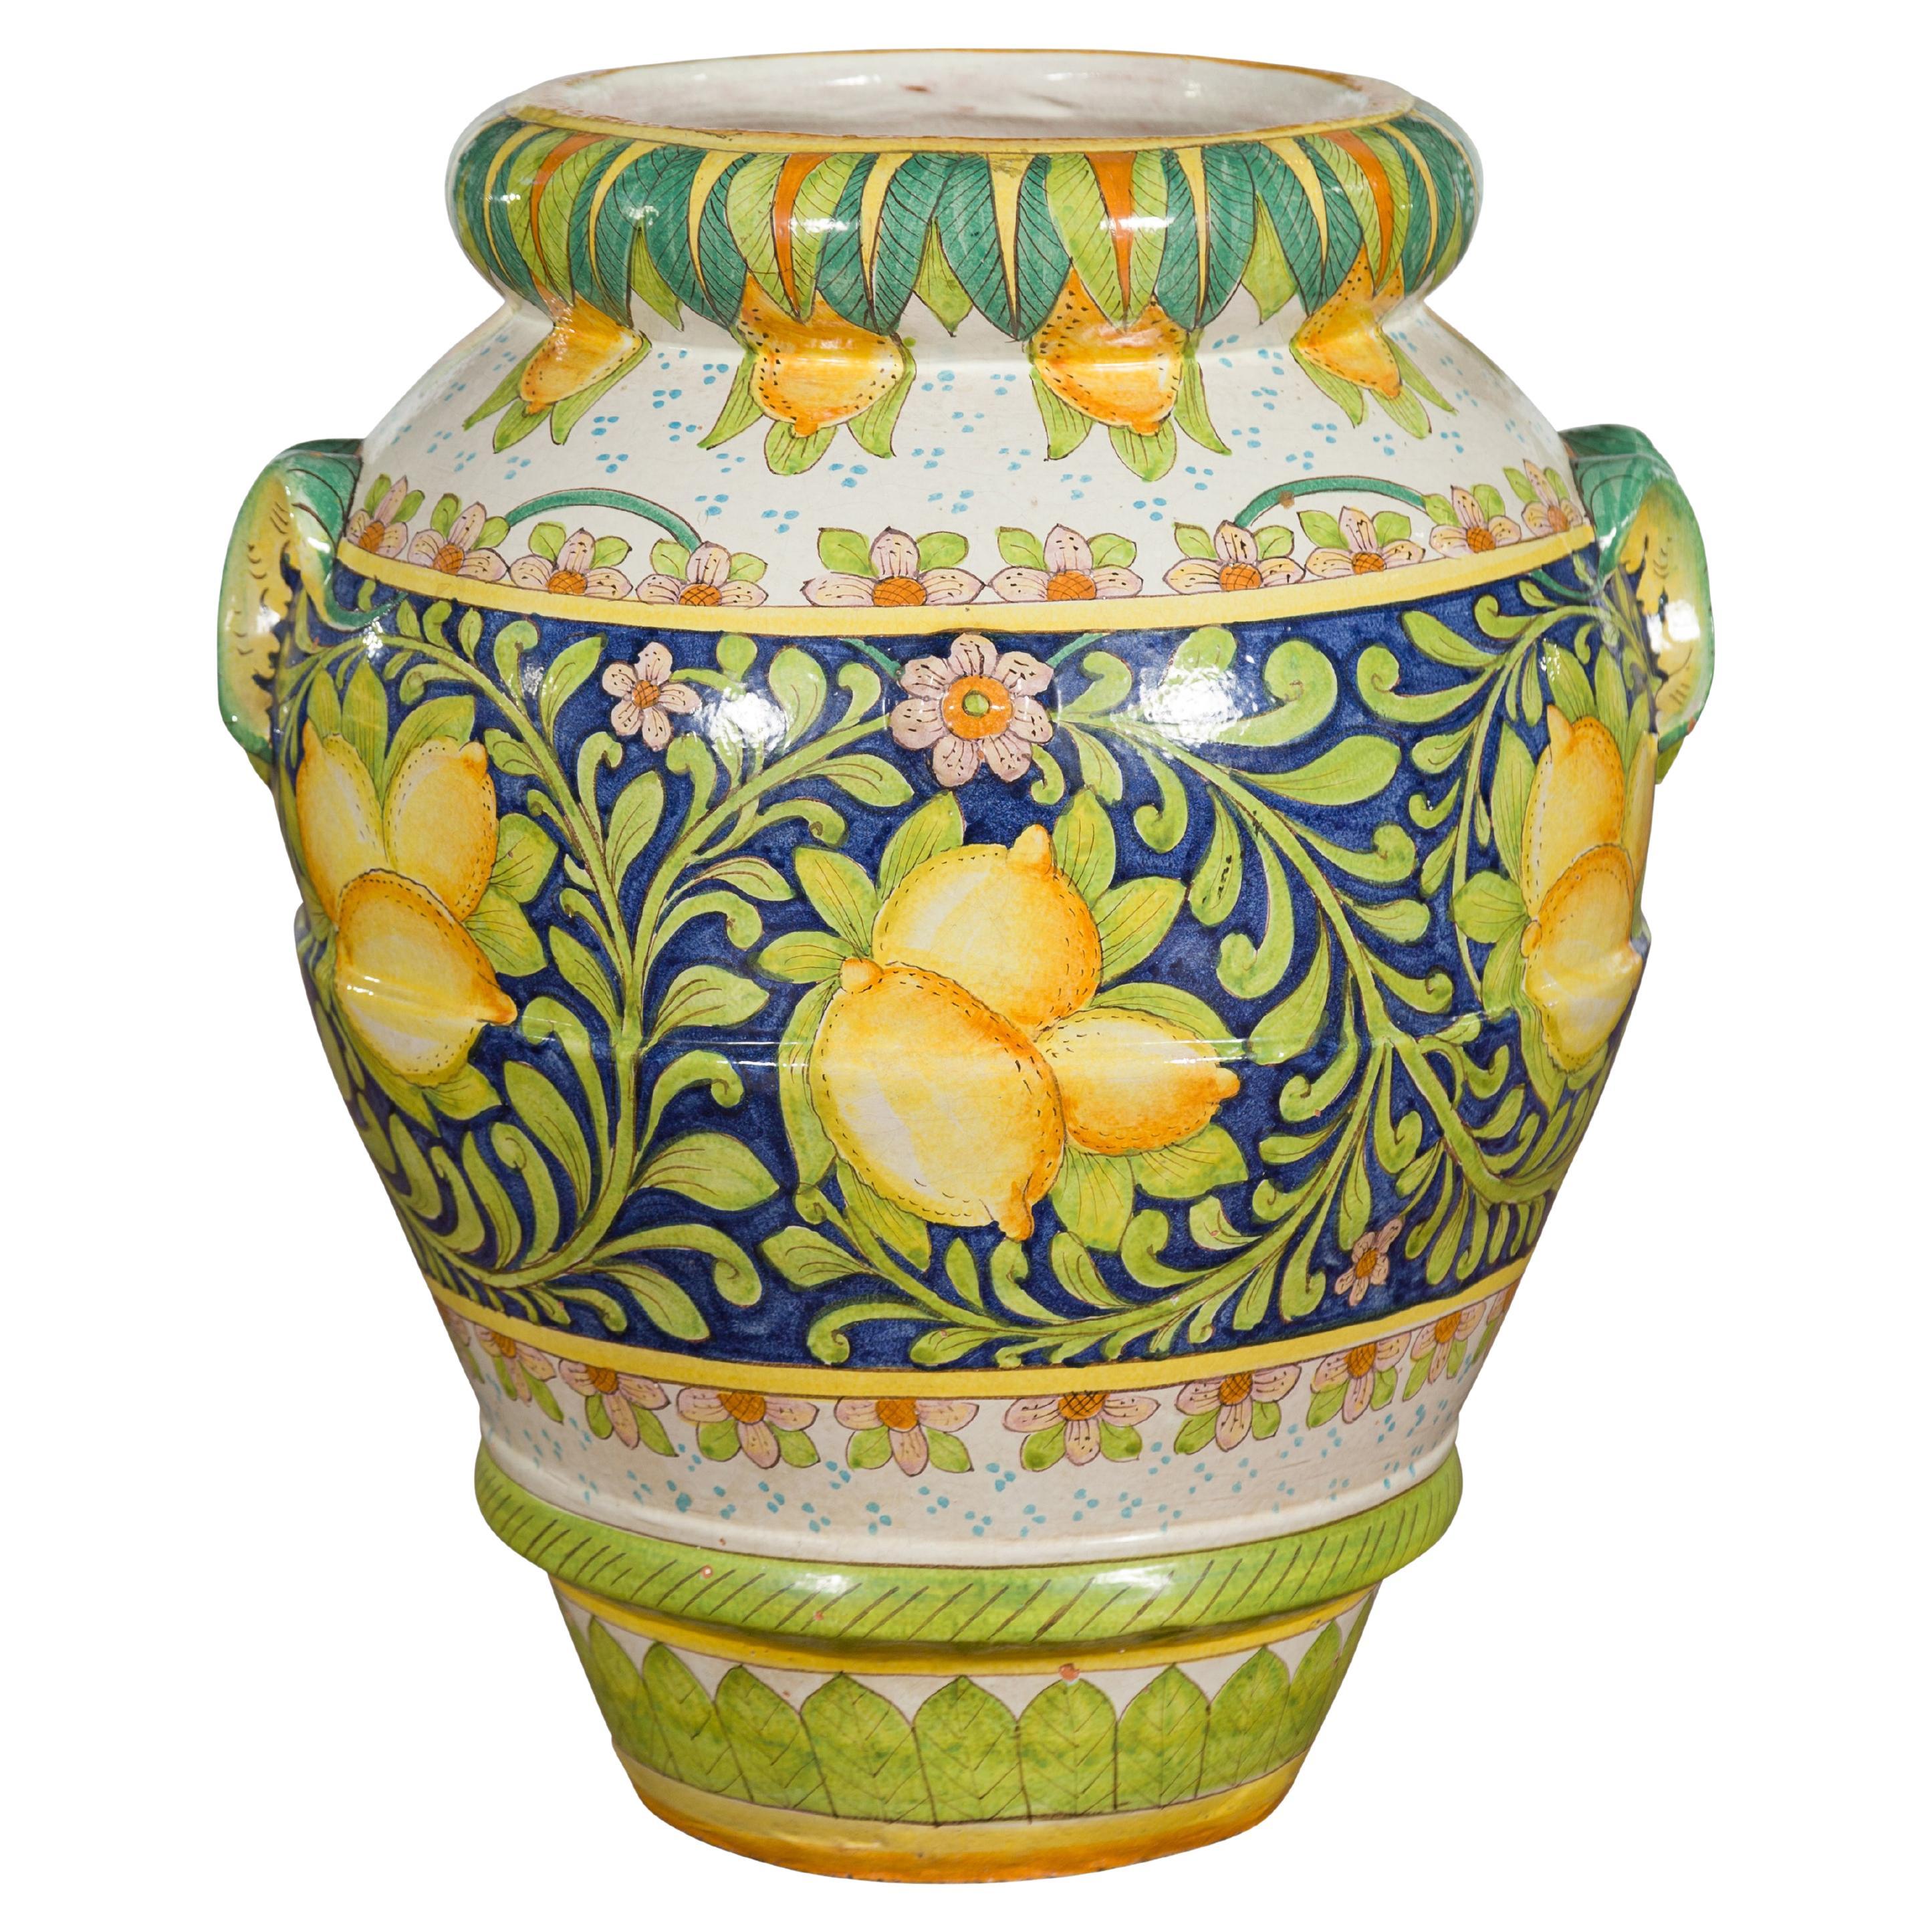 Grand pot jaune et vert peint à la main avec des citrons et des feuillages en volutes